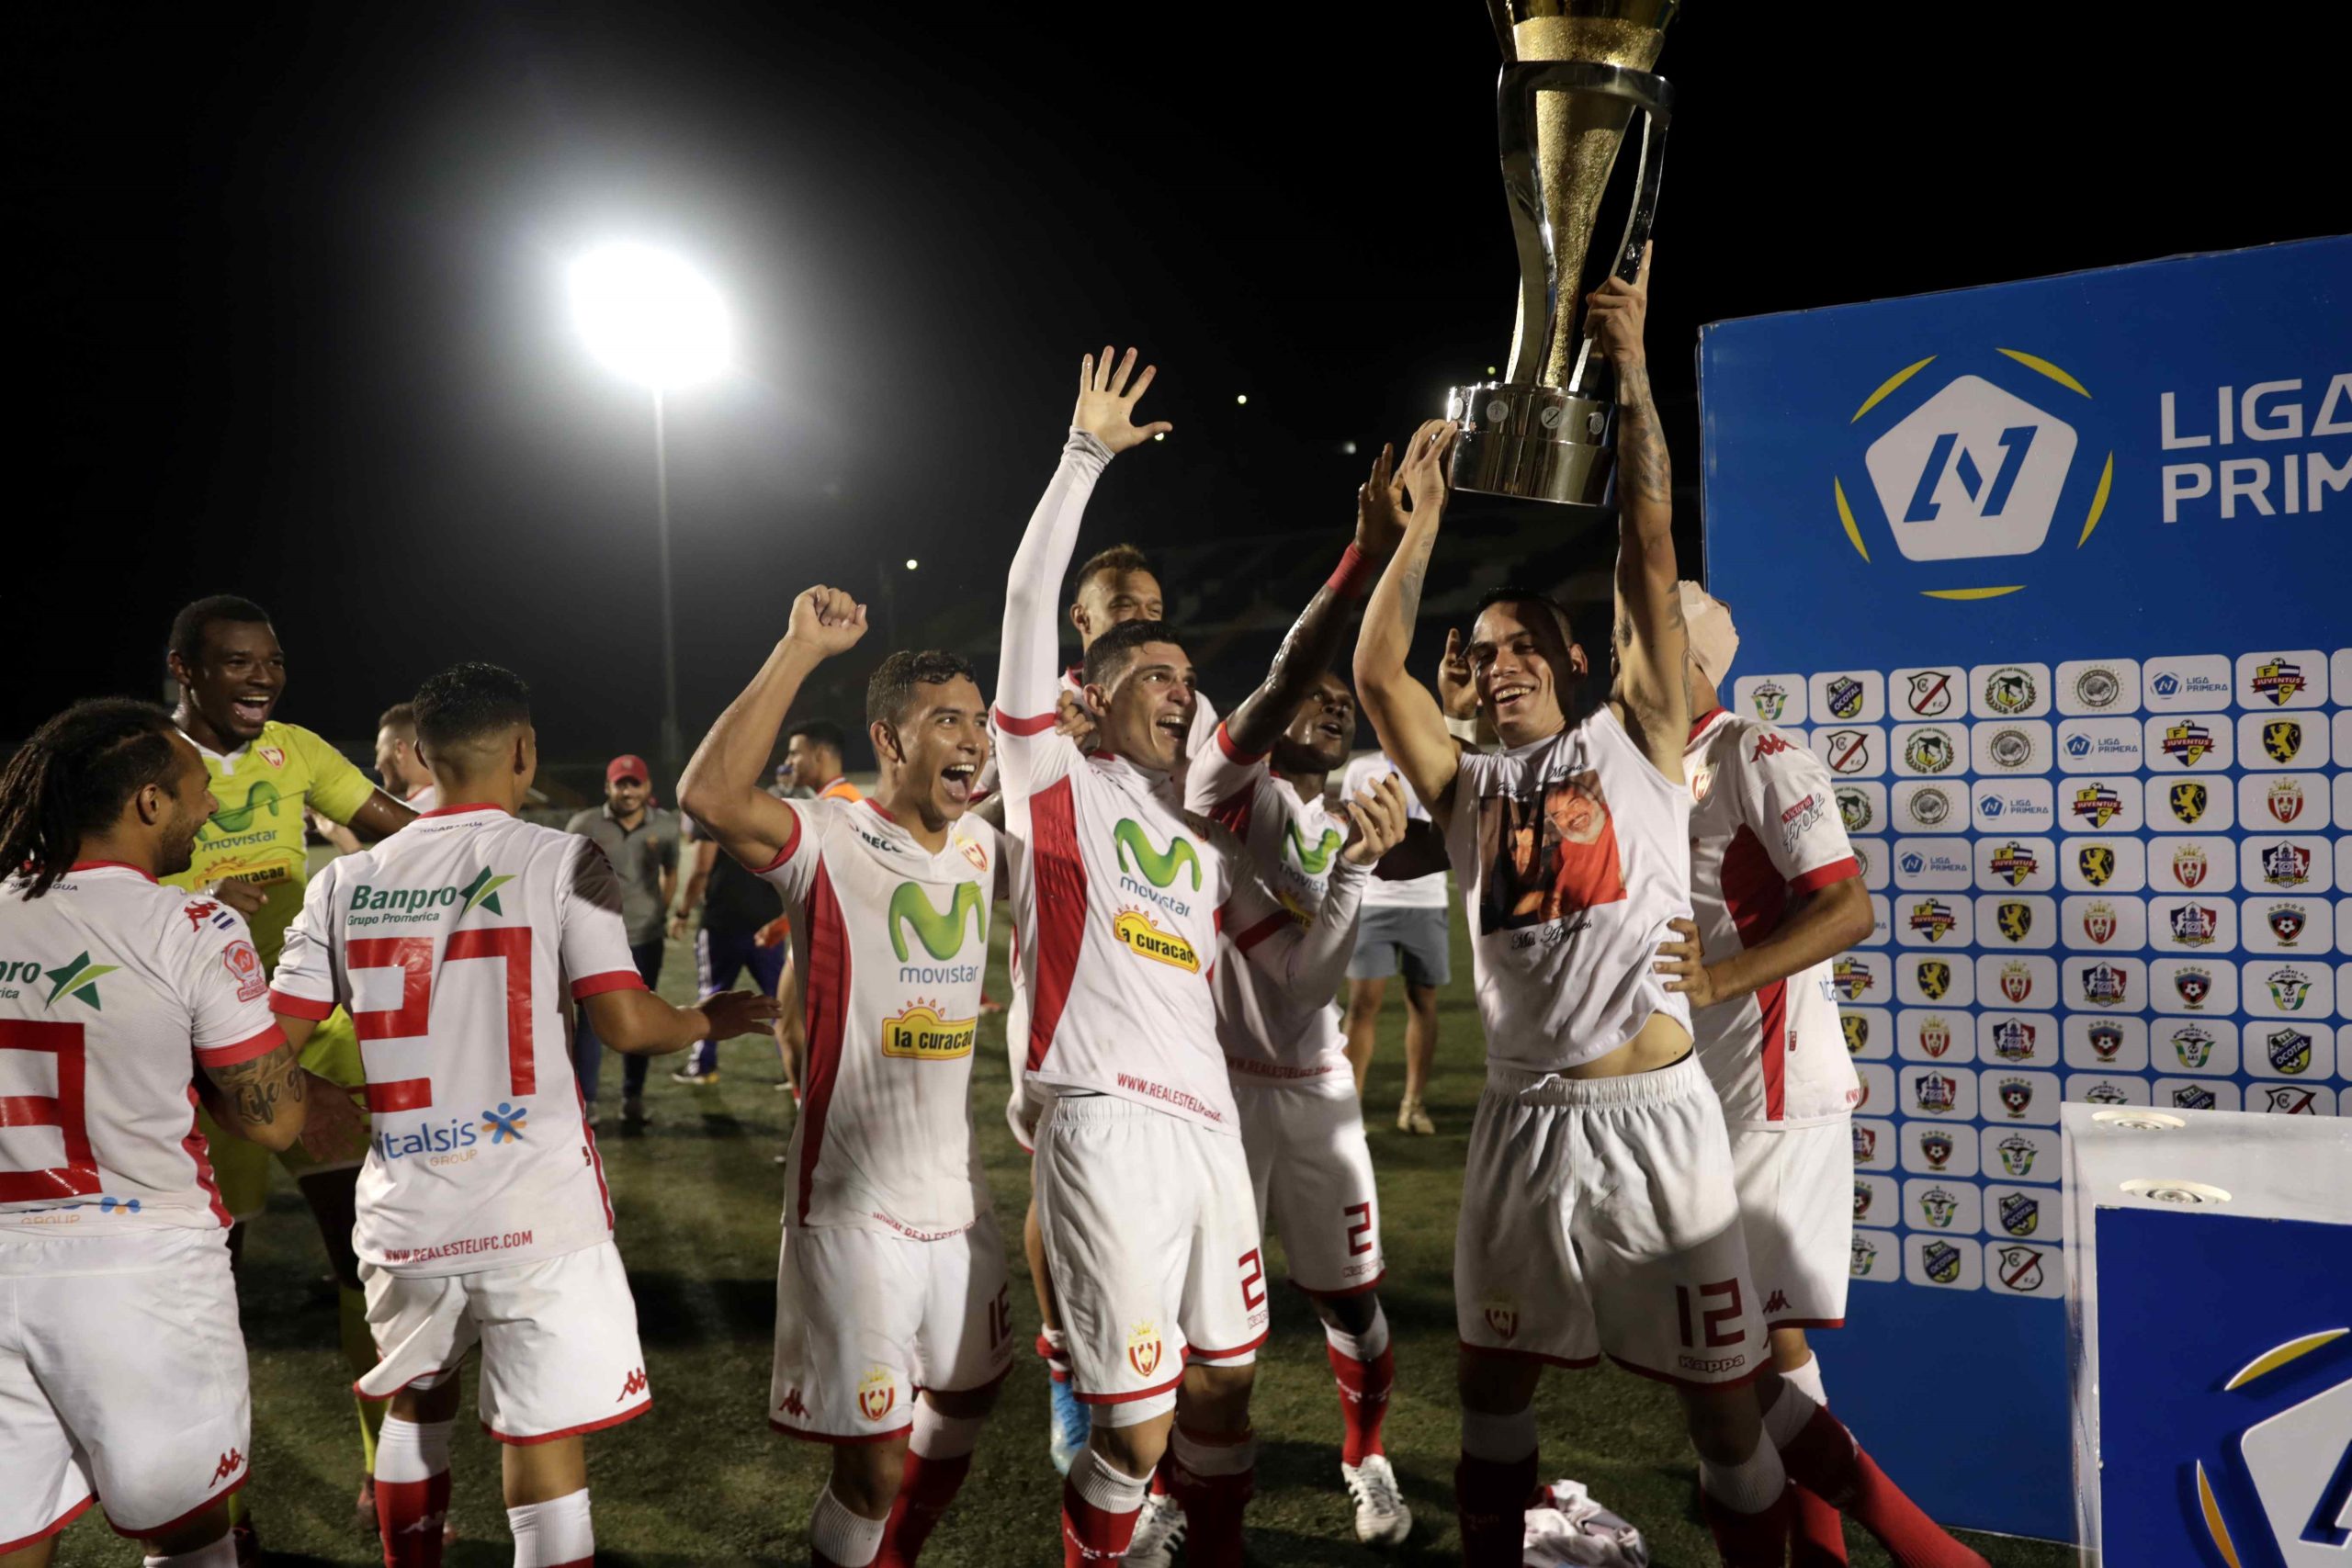 Una liga de fútbol ineficiente financiada con dinero de la Alcaldía de Managua